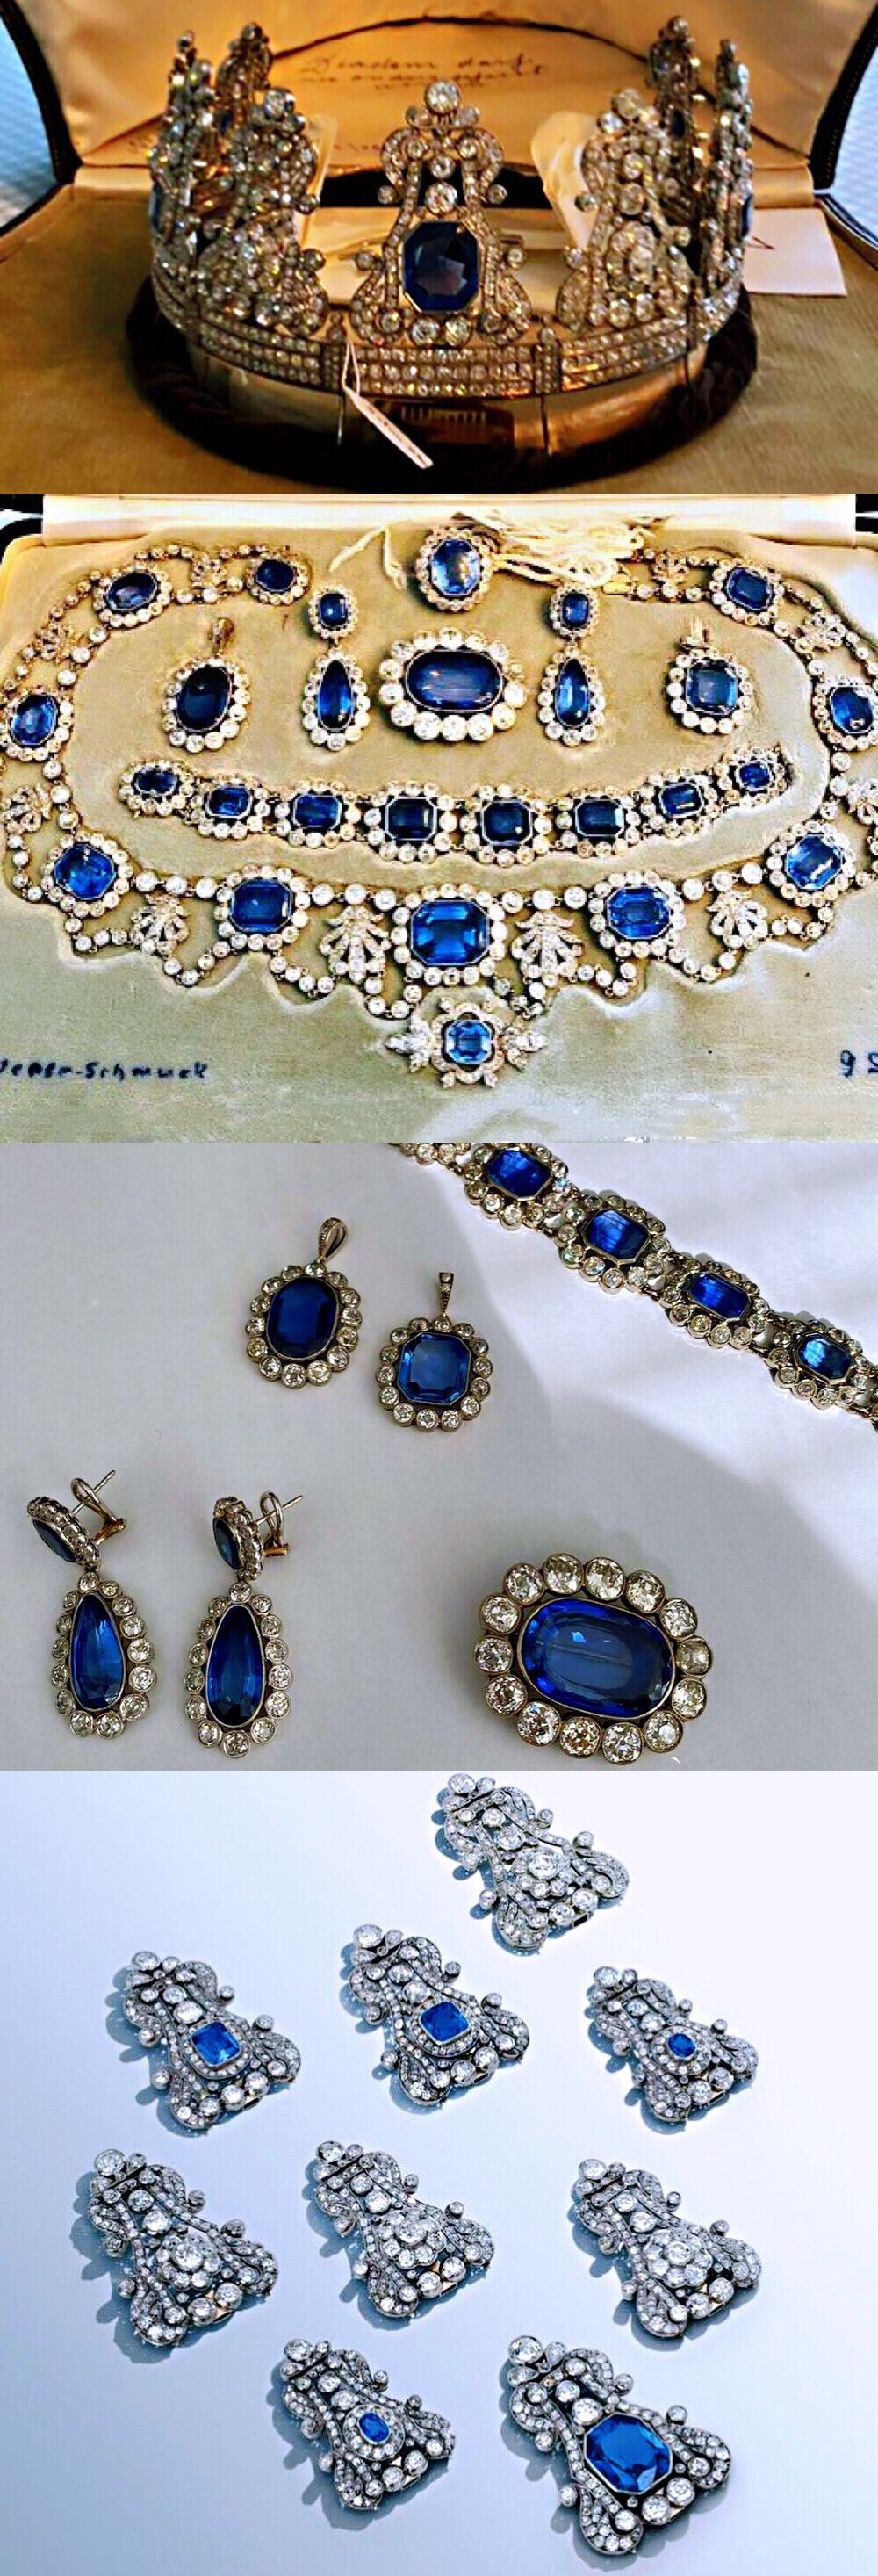 即将拍卖的霍亨索伦-西格马林根家族蓝宝石套装
包括王冠X2，项链X1，手链X1，耳环X1，胸针X2，吊坠X2，蓝宝石分别来自斯里兰卡和缅甸。